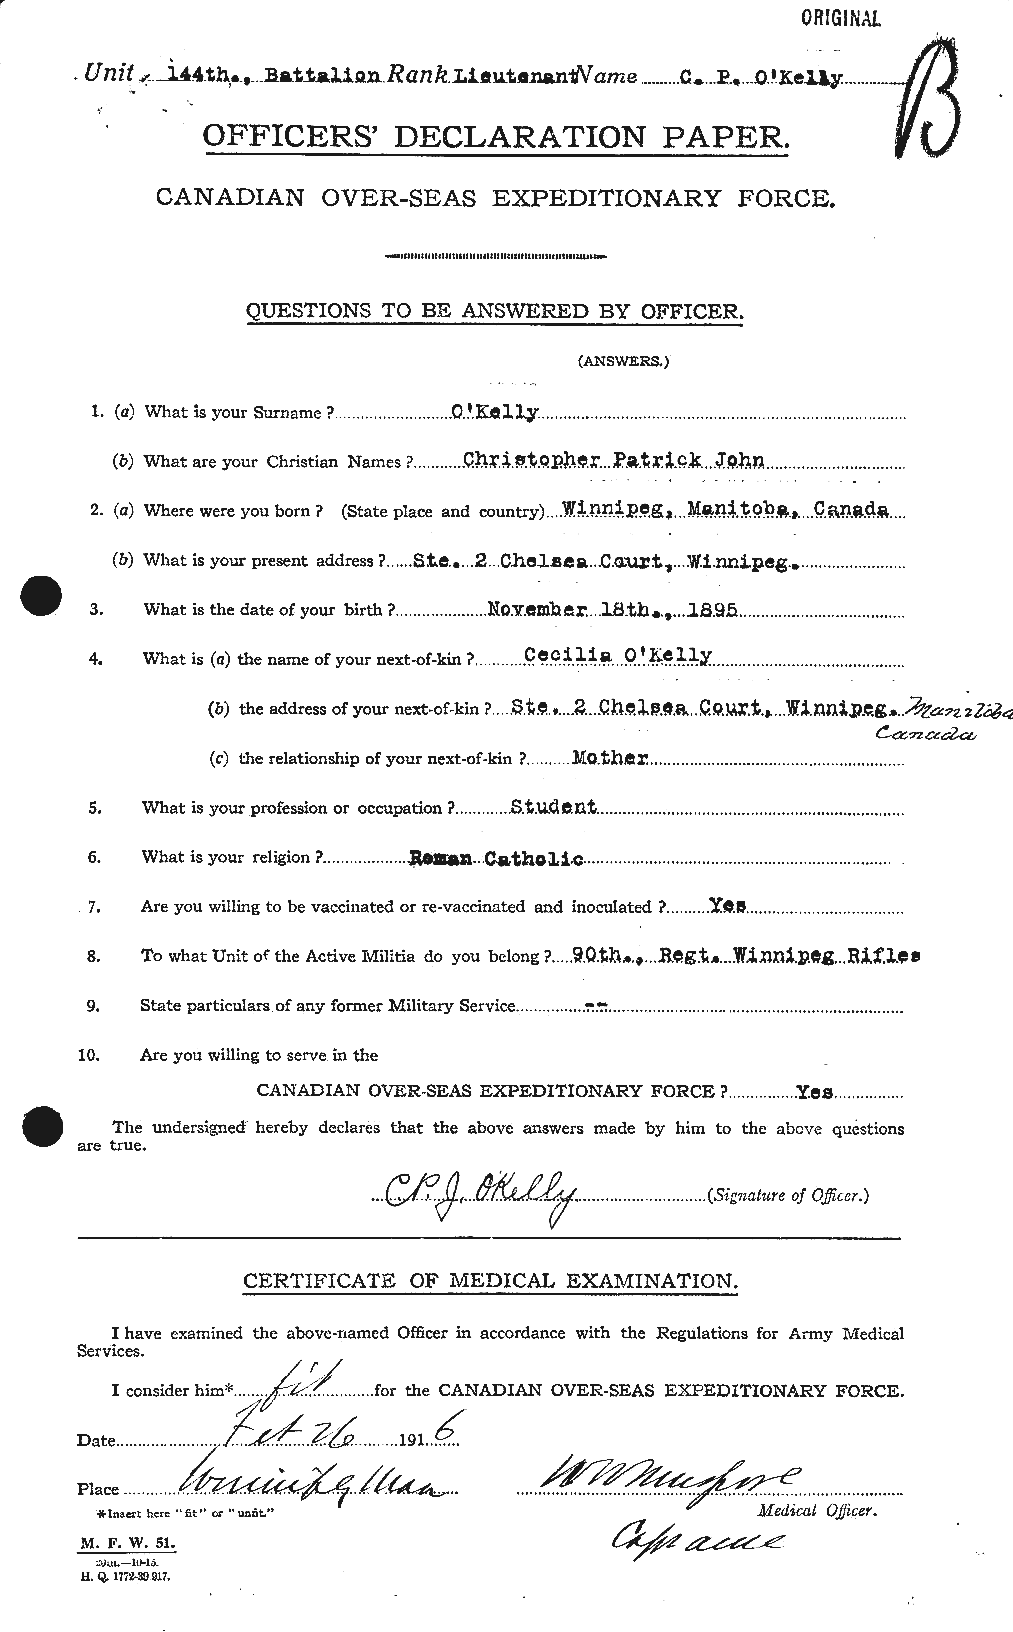 Dossiers du Personnel de la Première Guerre mondiale - CEC 556360a